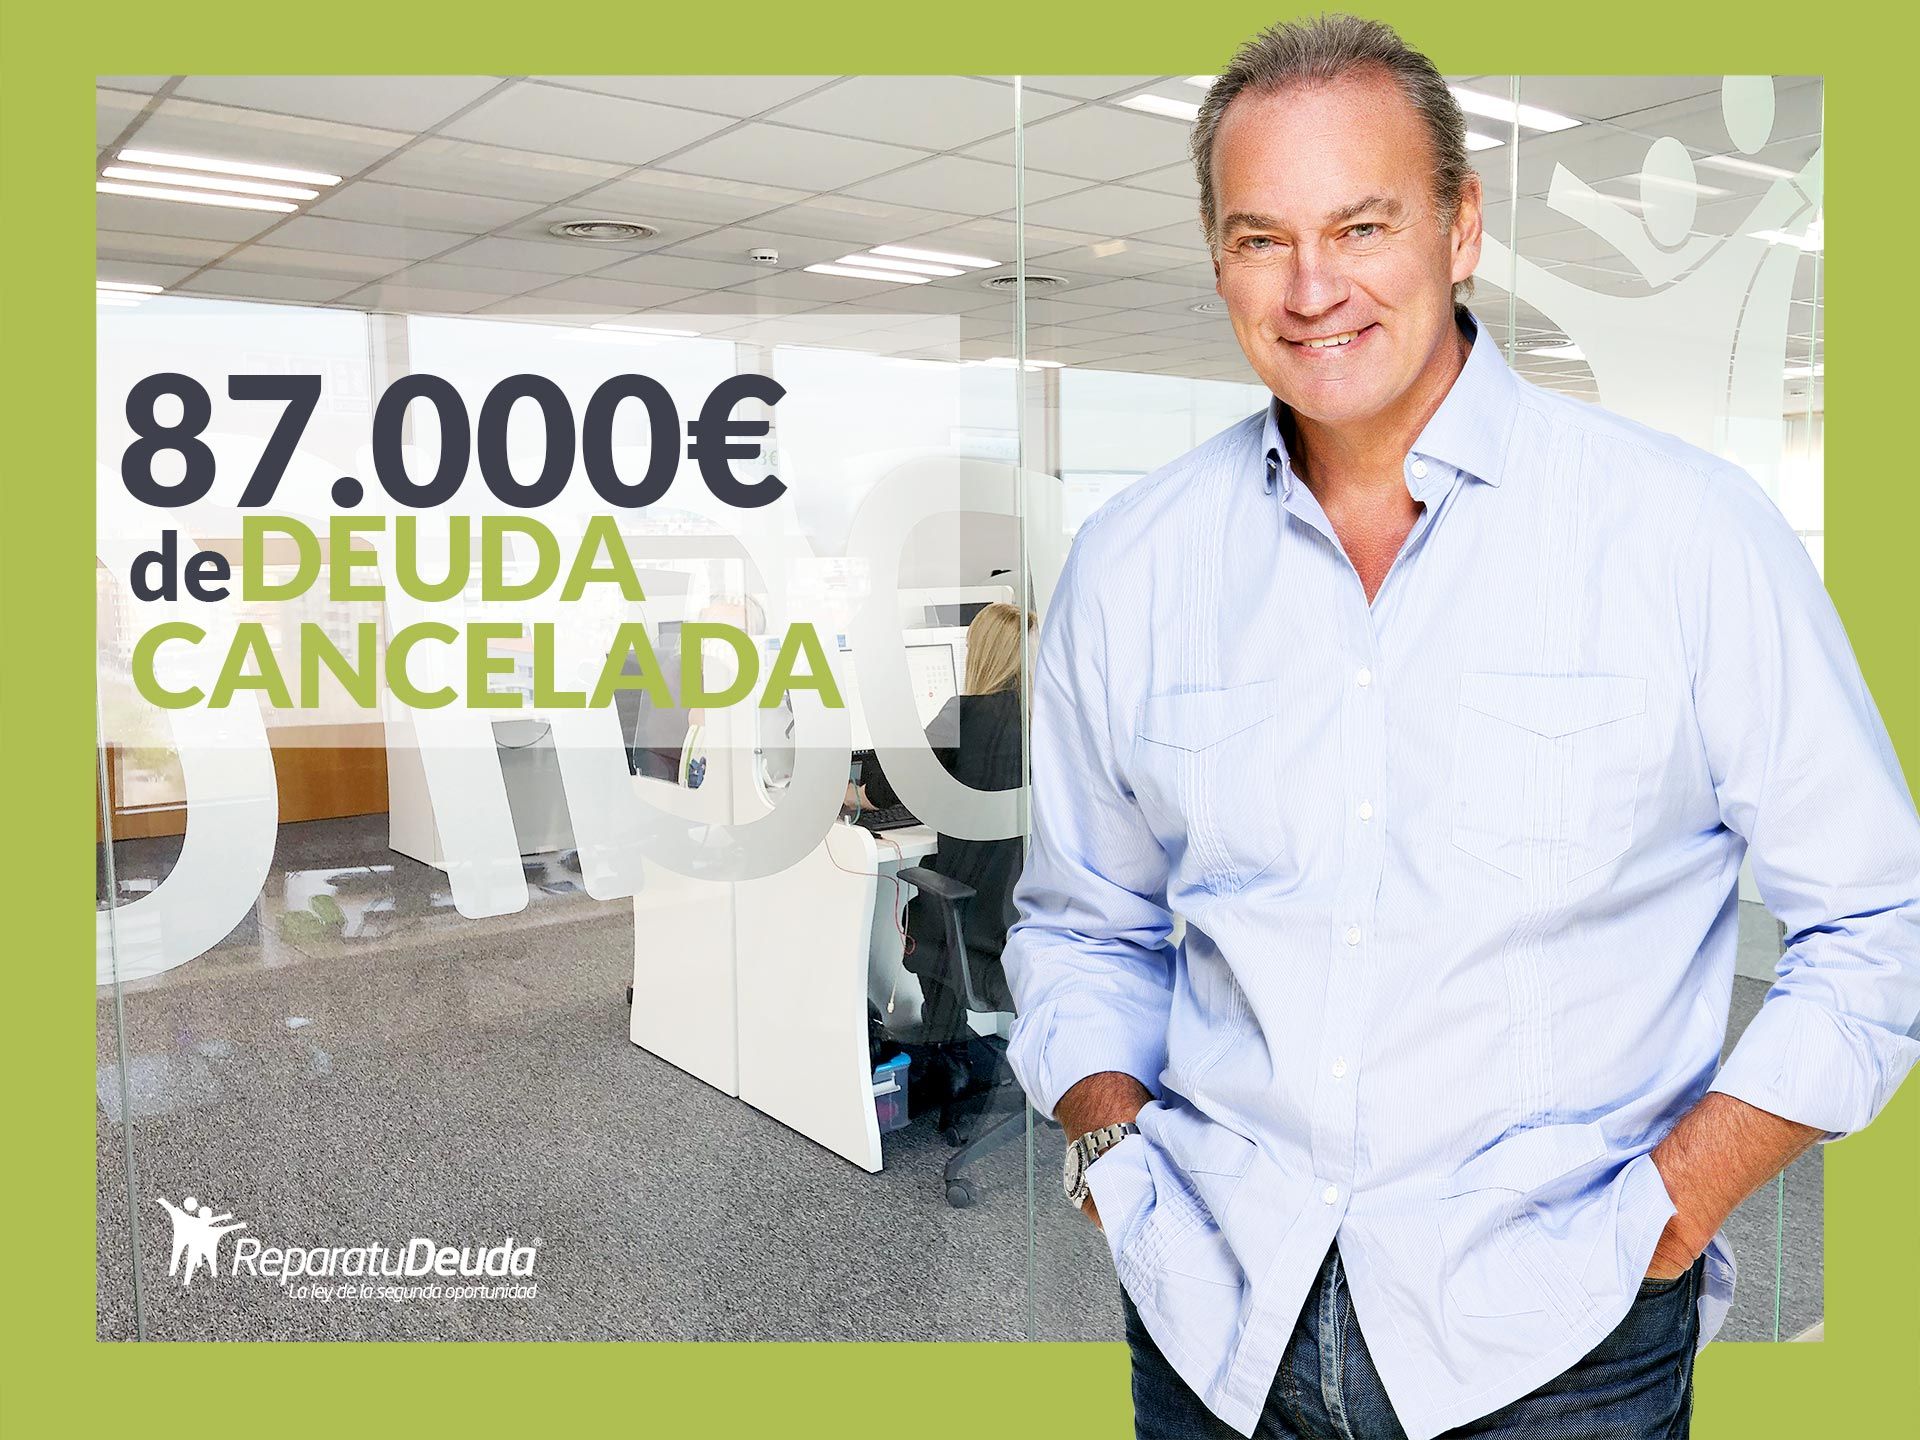 Repara tu Deuda Abogados cancela 87.000? en Vigo (Pontevedra) gracias a la Ley de Segunda Oportunidad